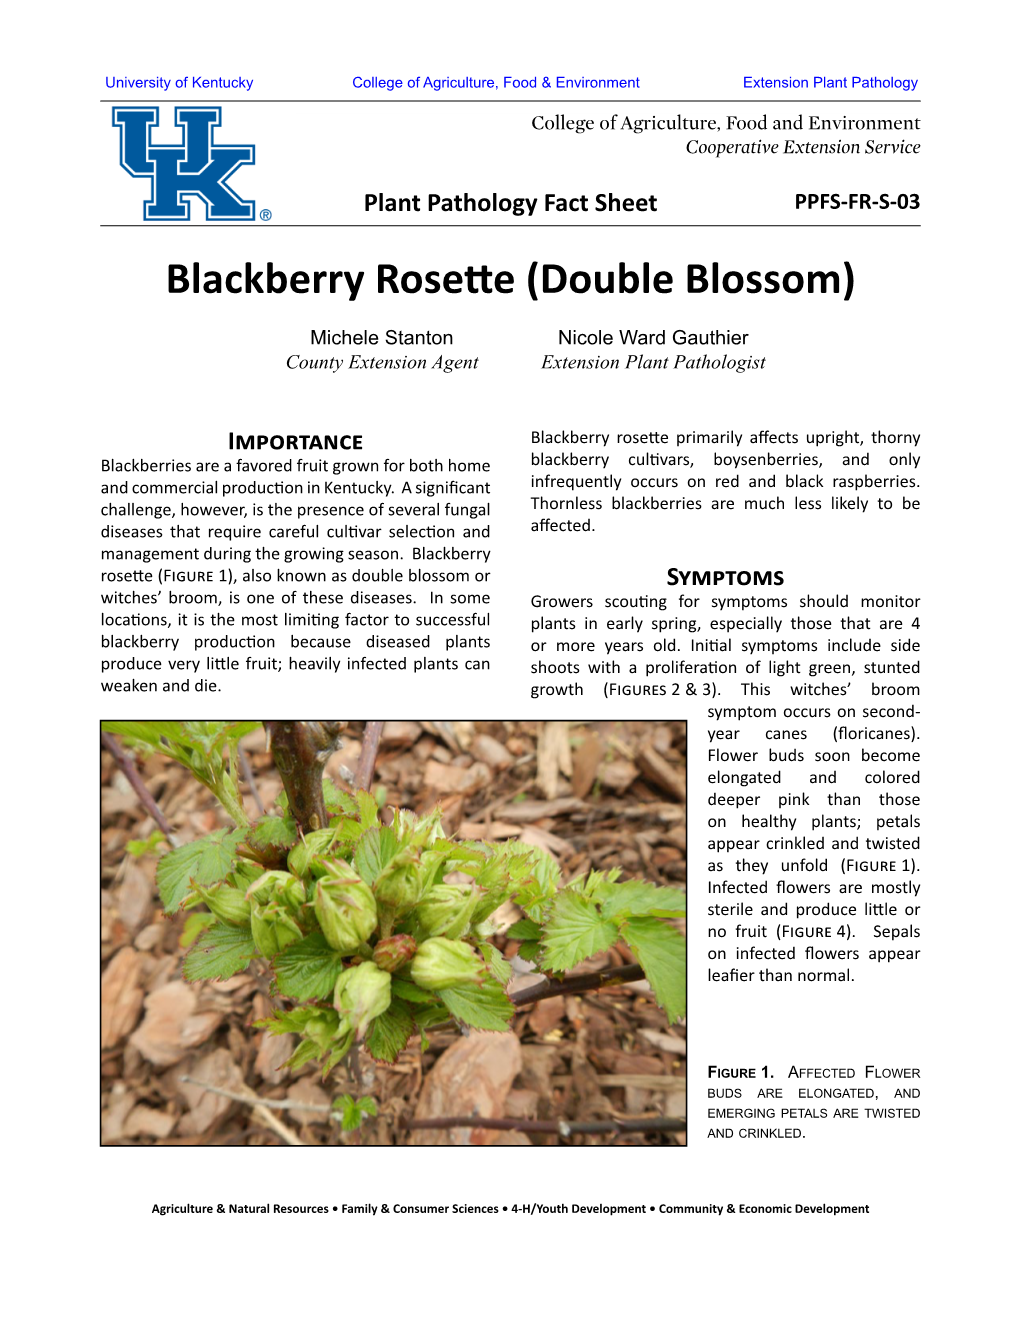 Blackberry Rosette (Double Blossom)